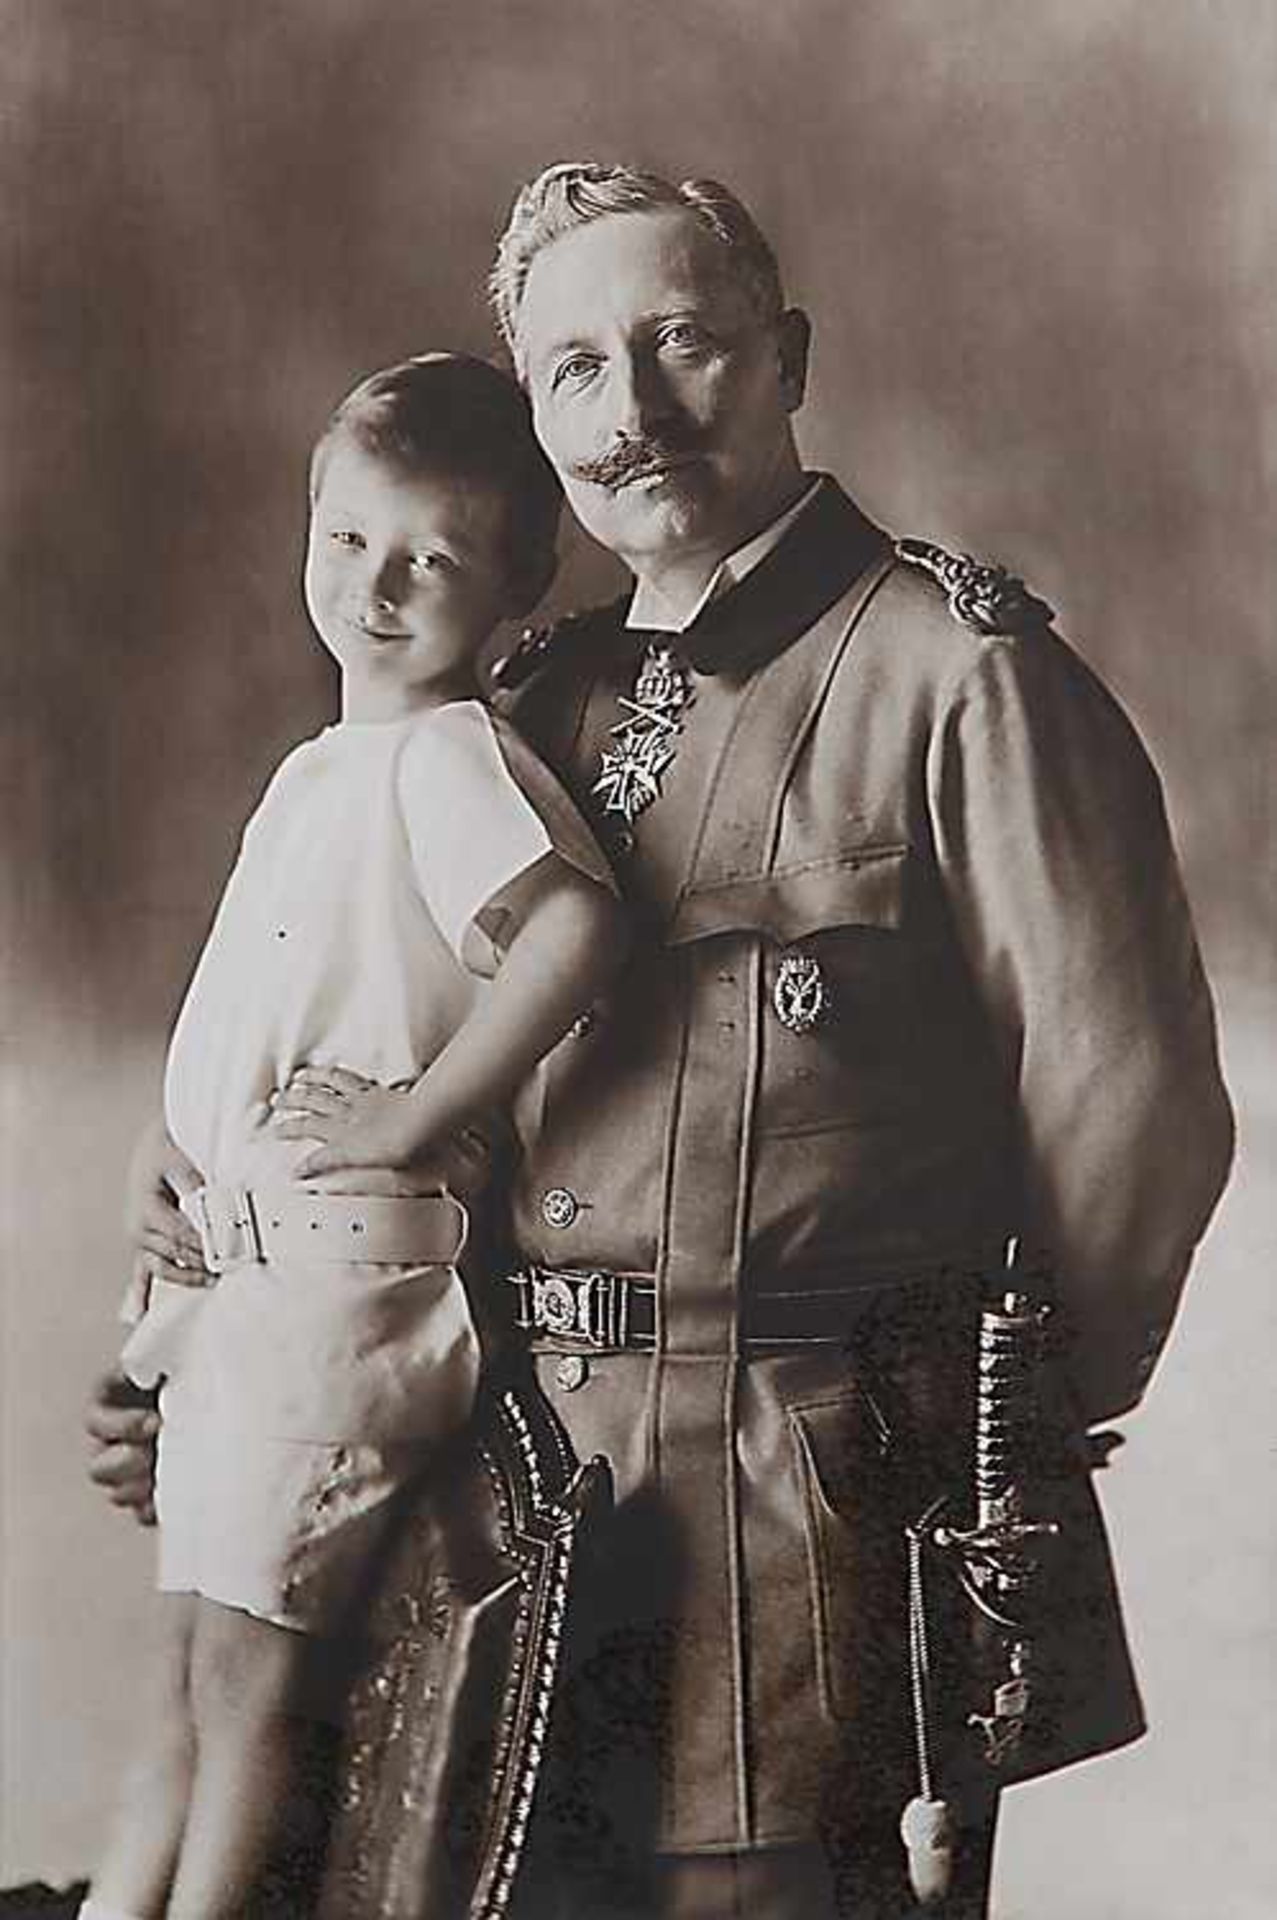 FotografieWilhelm II. mit seinem ältesten Enkel Prinz Wilhelm von Preußen.Ca. 28,8 x 19,2 cm (